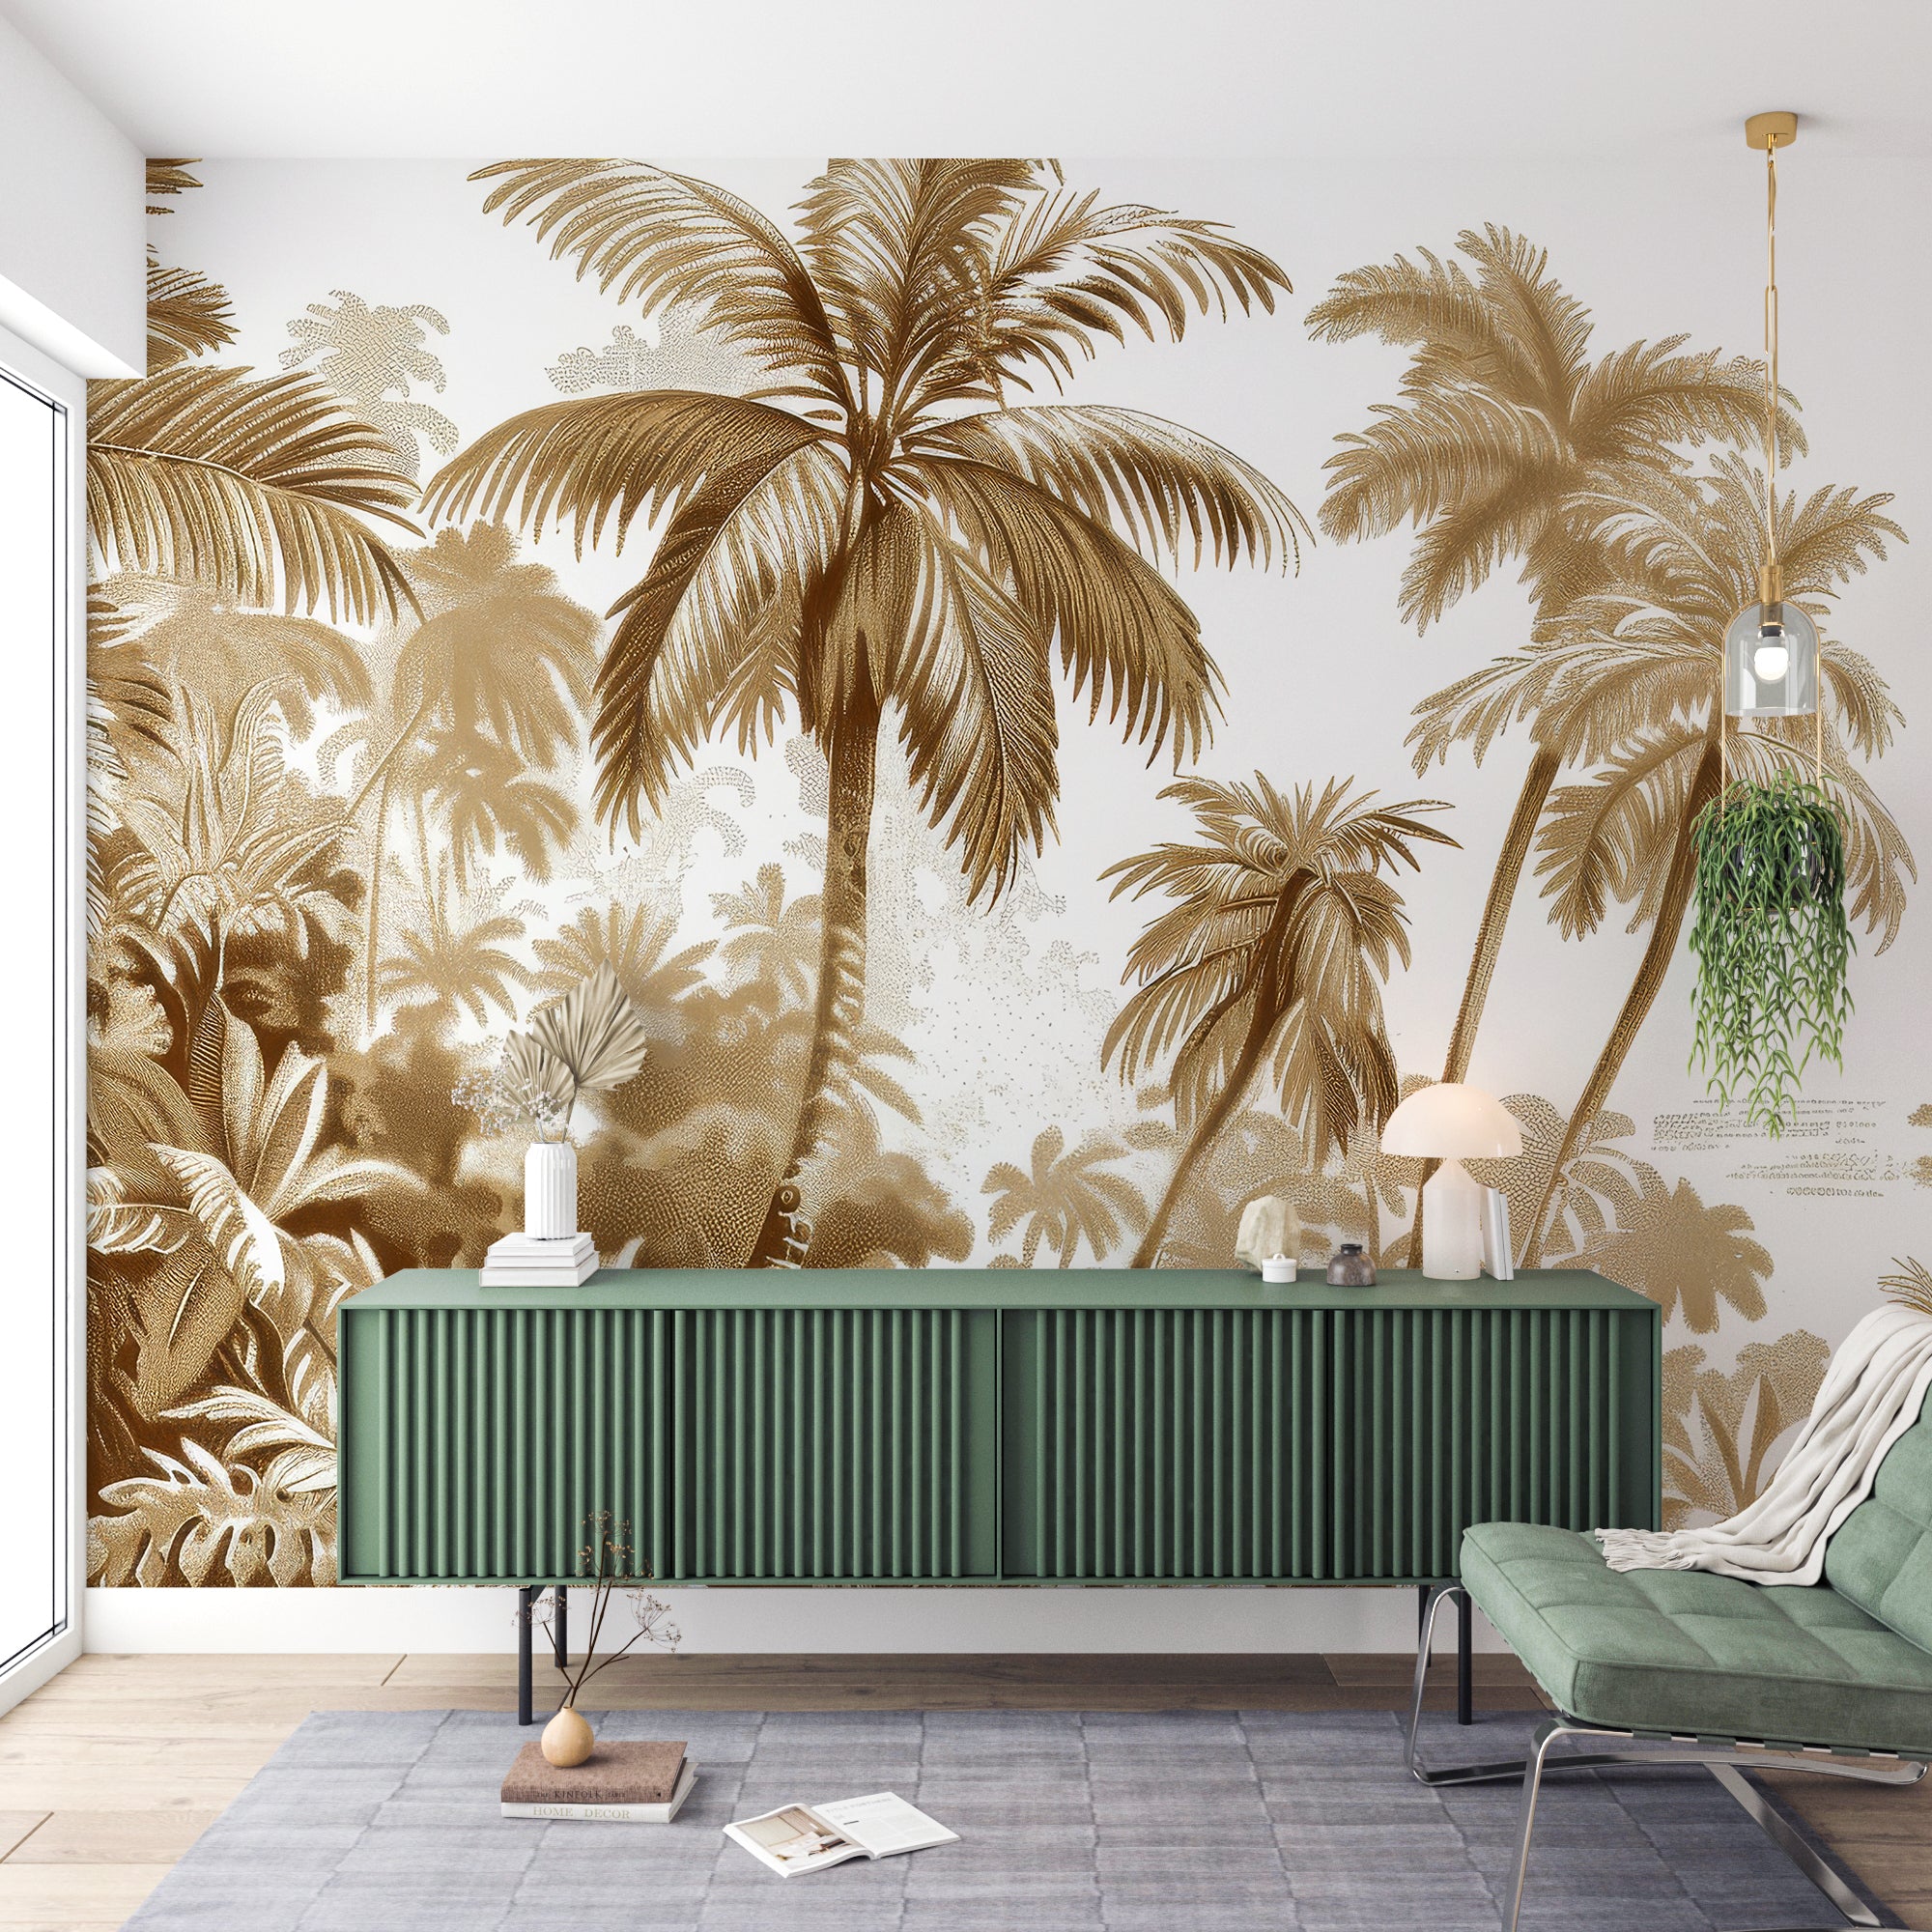 Luxe Tropical : Papier peint jungle stylisée en brun et blanc